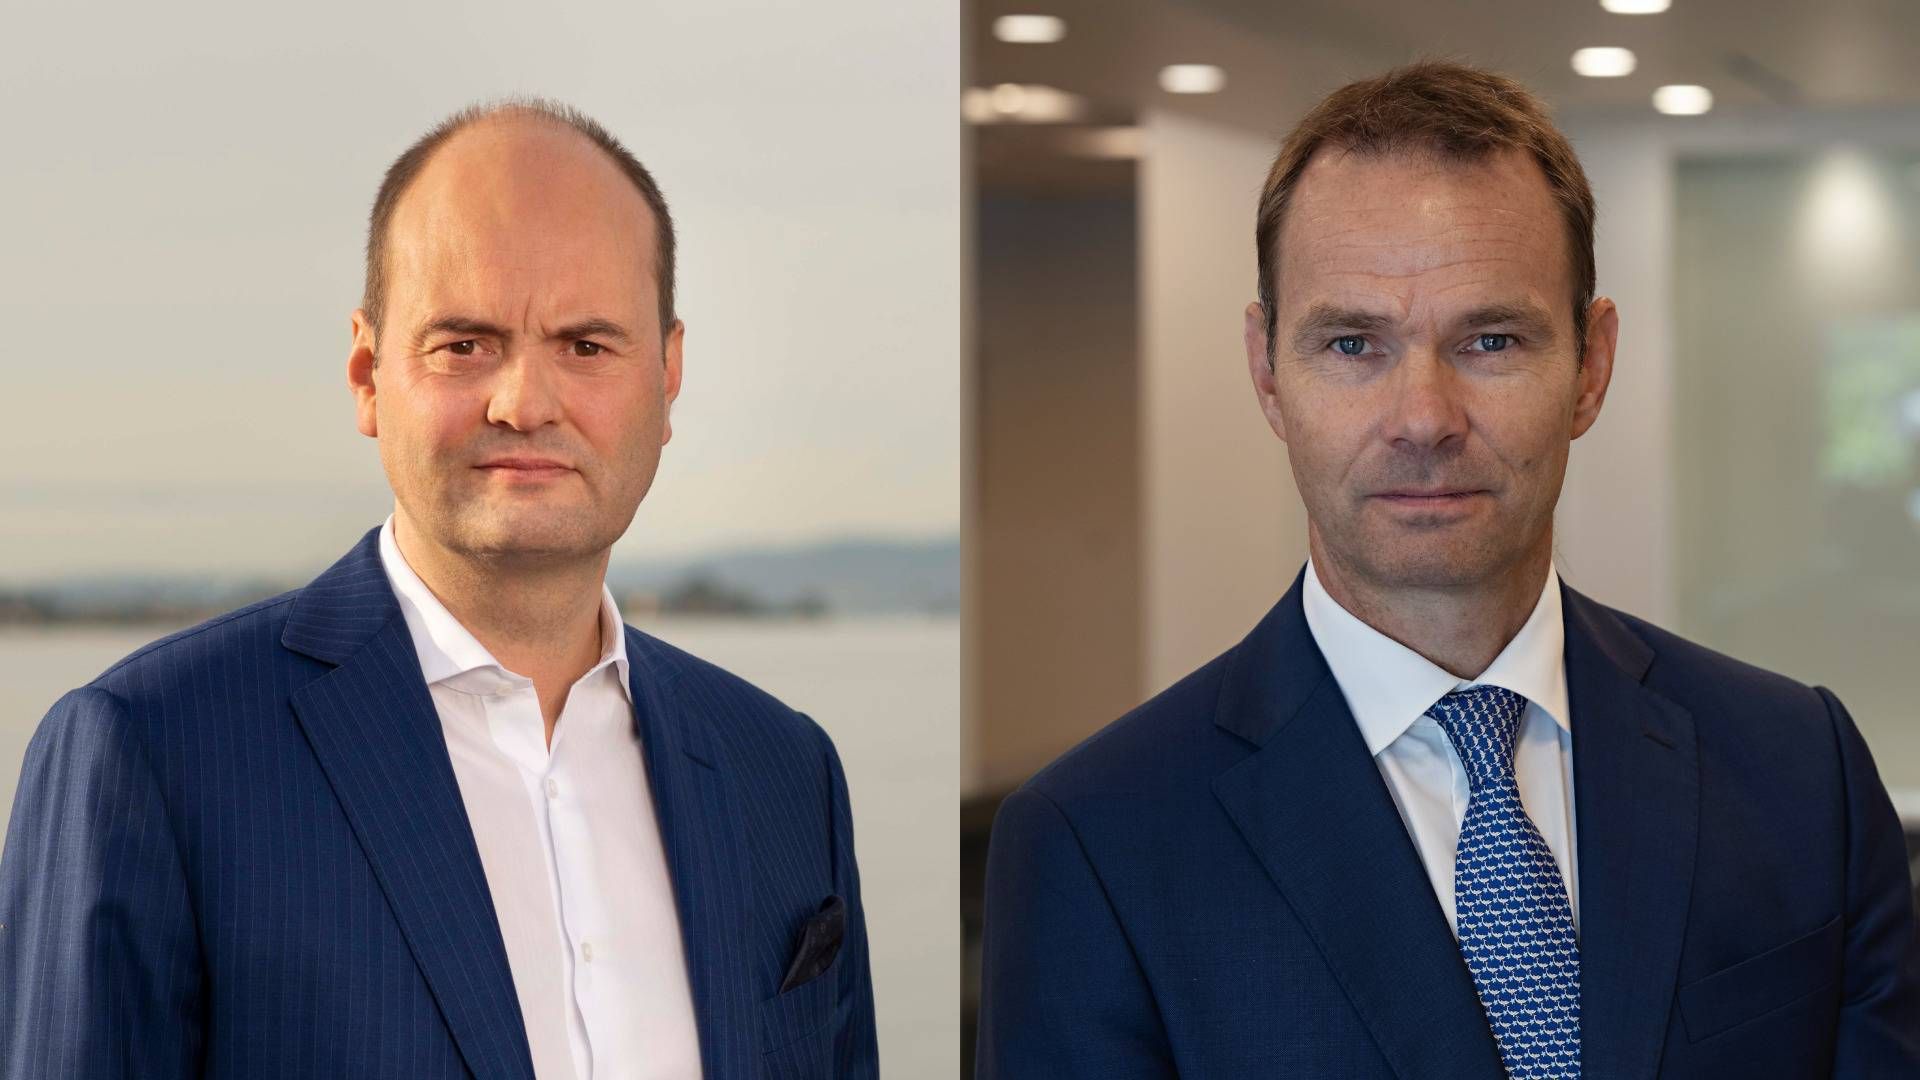 Ståle Hansen, adm. direktør for Skuld (venstre) og Rolf Thore Roppestad, adm. direktør for Gard. | Foto: Skuld og Gard